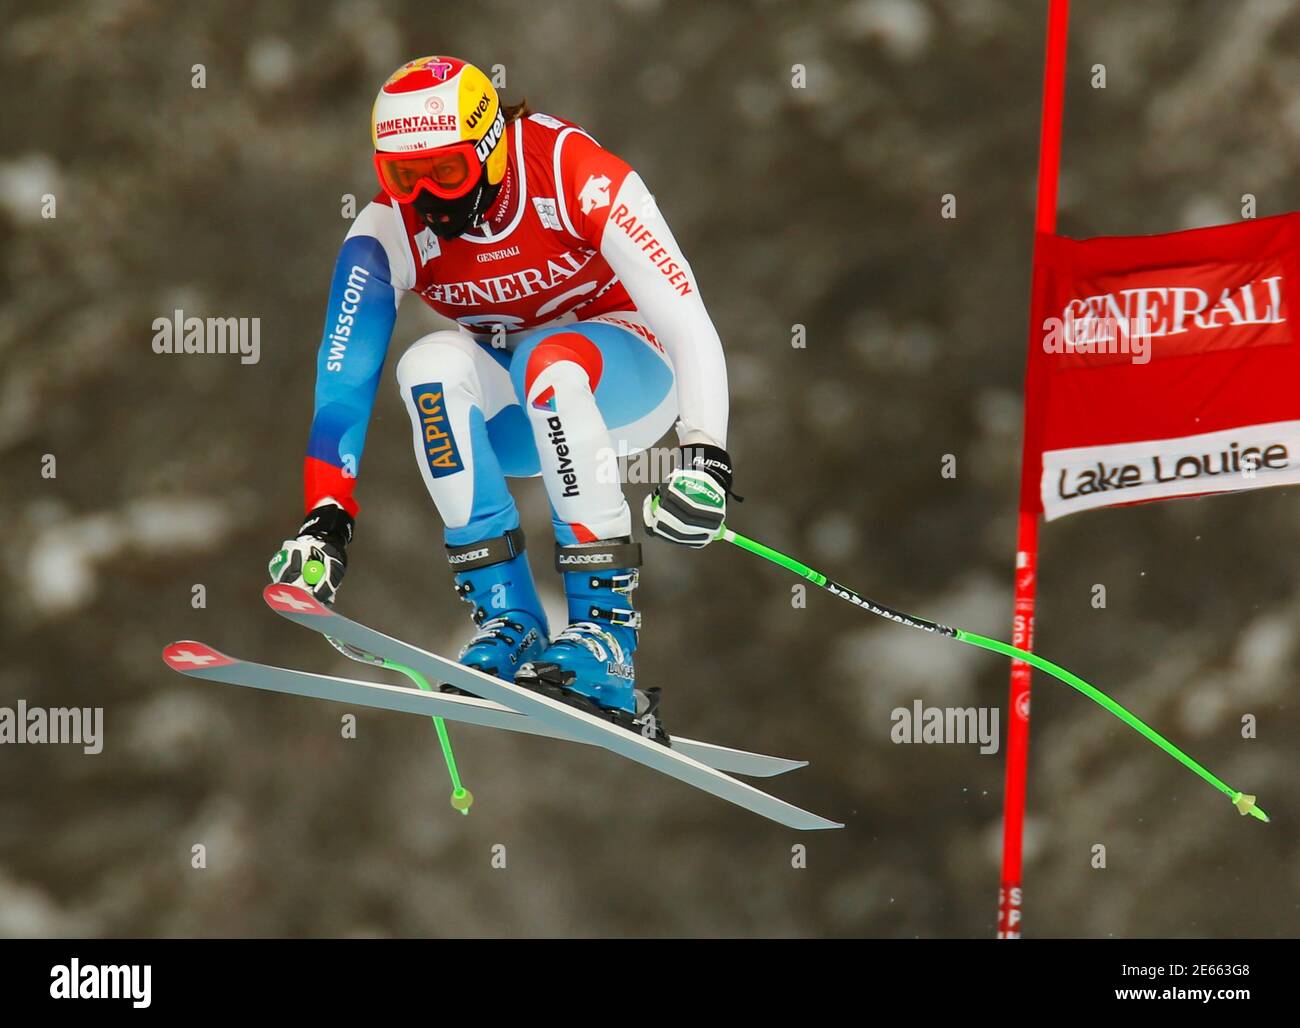 Die Schweizer Skifahrerin Nadja Kamer nimmt beim alpinen Skisport-Training für die Women's World Cup Downhill in Lake Louise, Alberta, am 27. November 2012 Luft auf. REUTERS/Mike Blake (KANADA - Tags: SKIFAHREN) Stockfoto